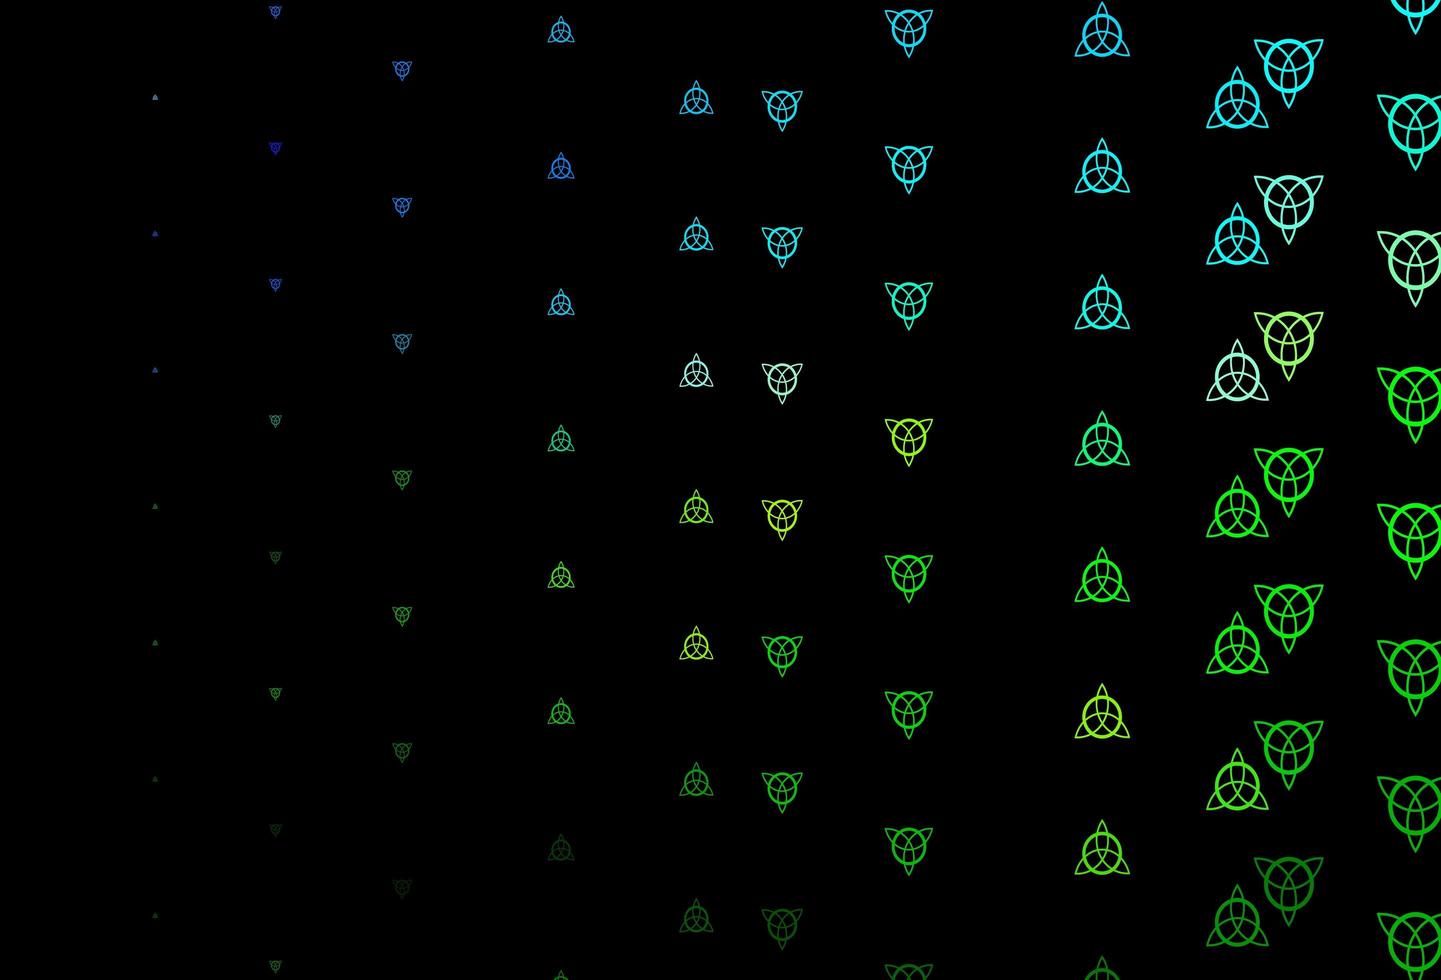 fond de vecteur bleu foncé, vert avec des symboles occultes.